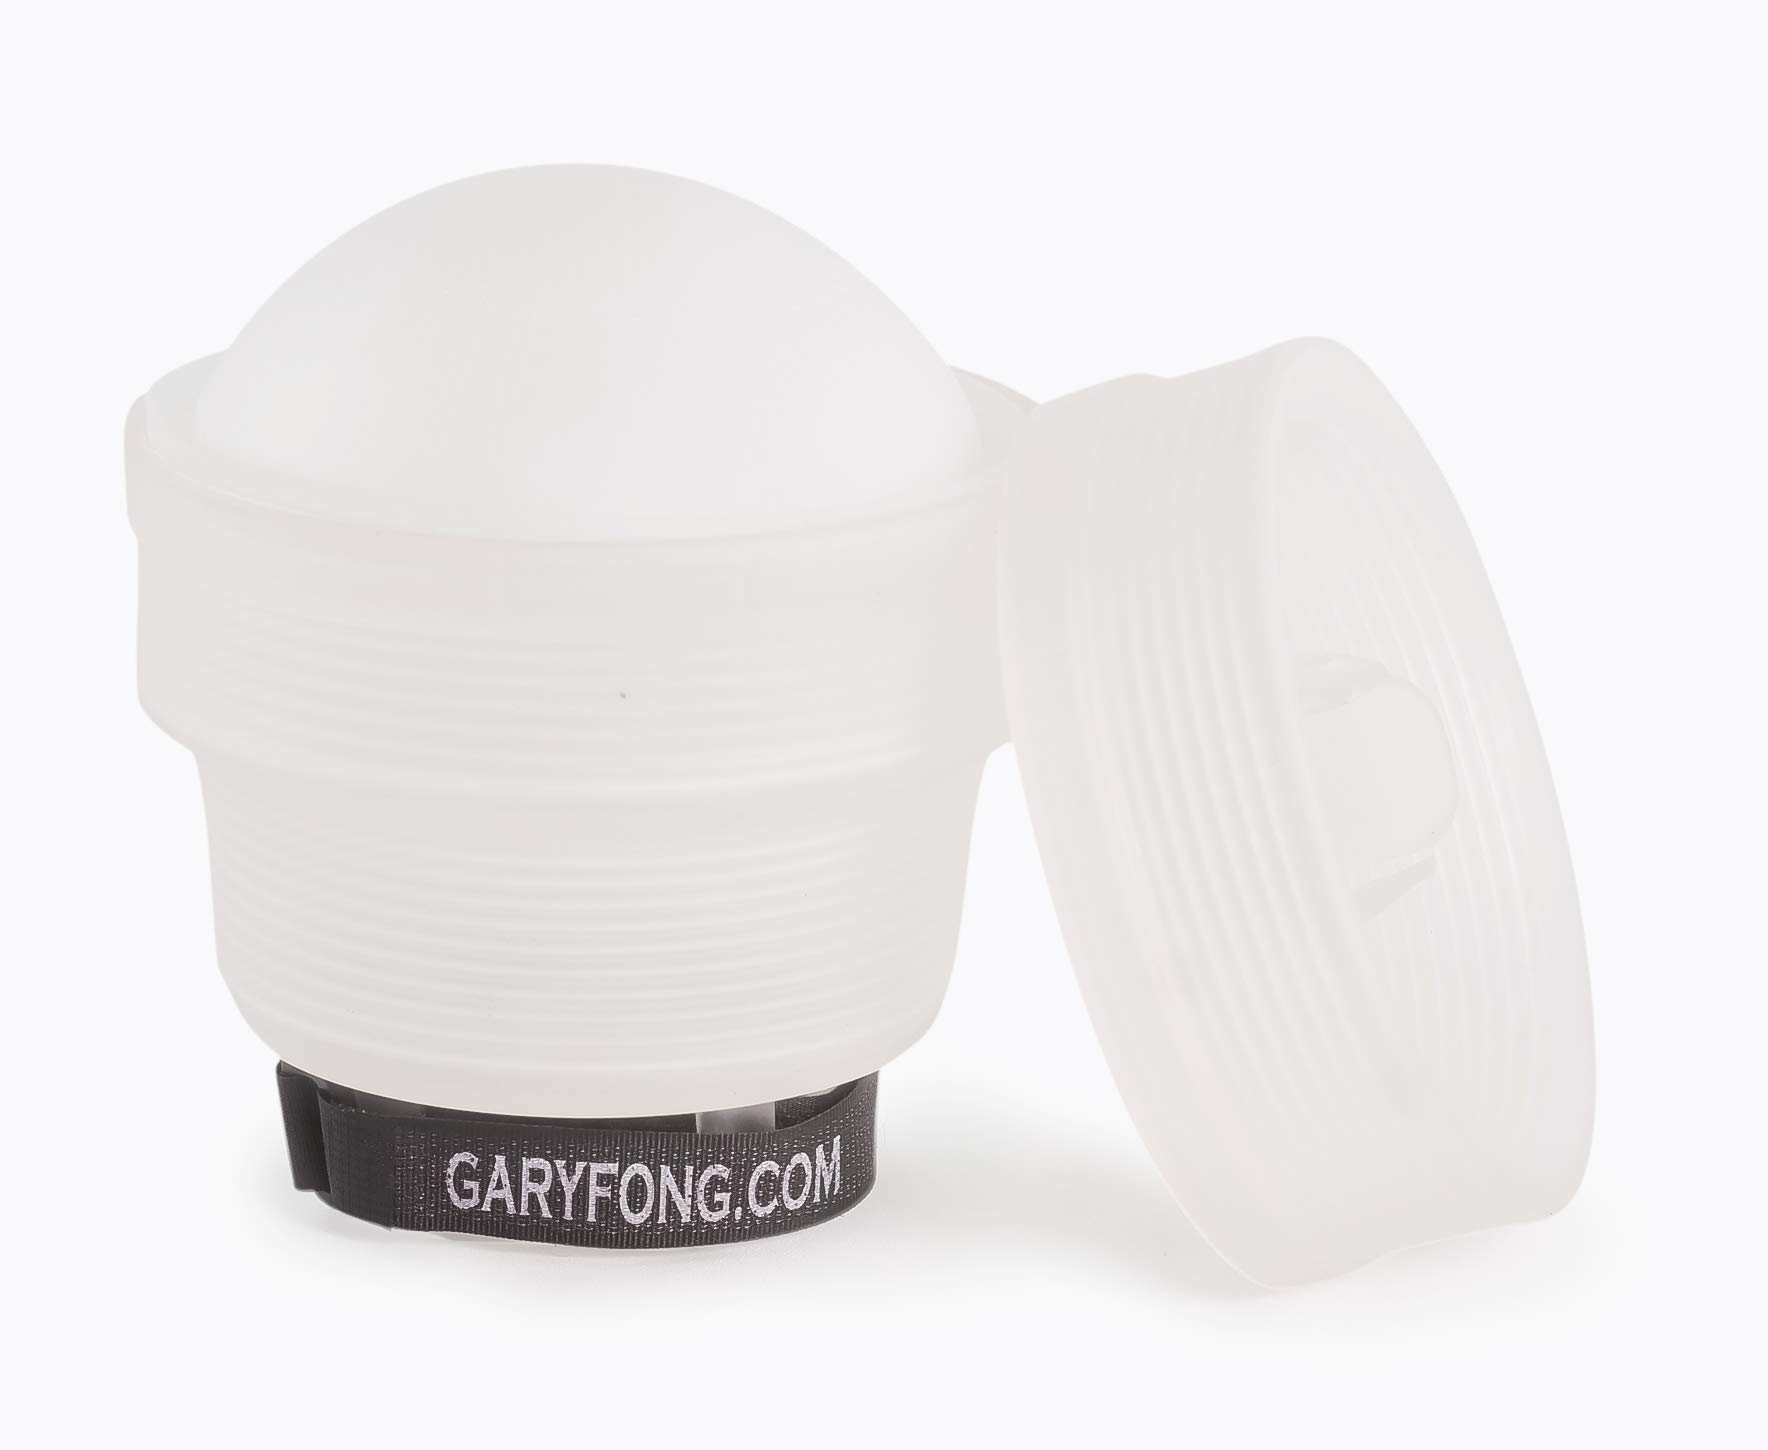 Gary Fong Lightsphere Collapsible Gen5